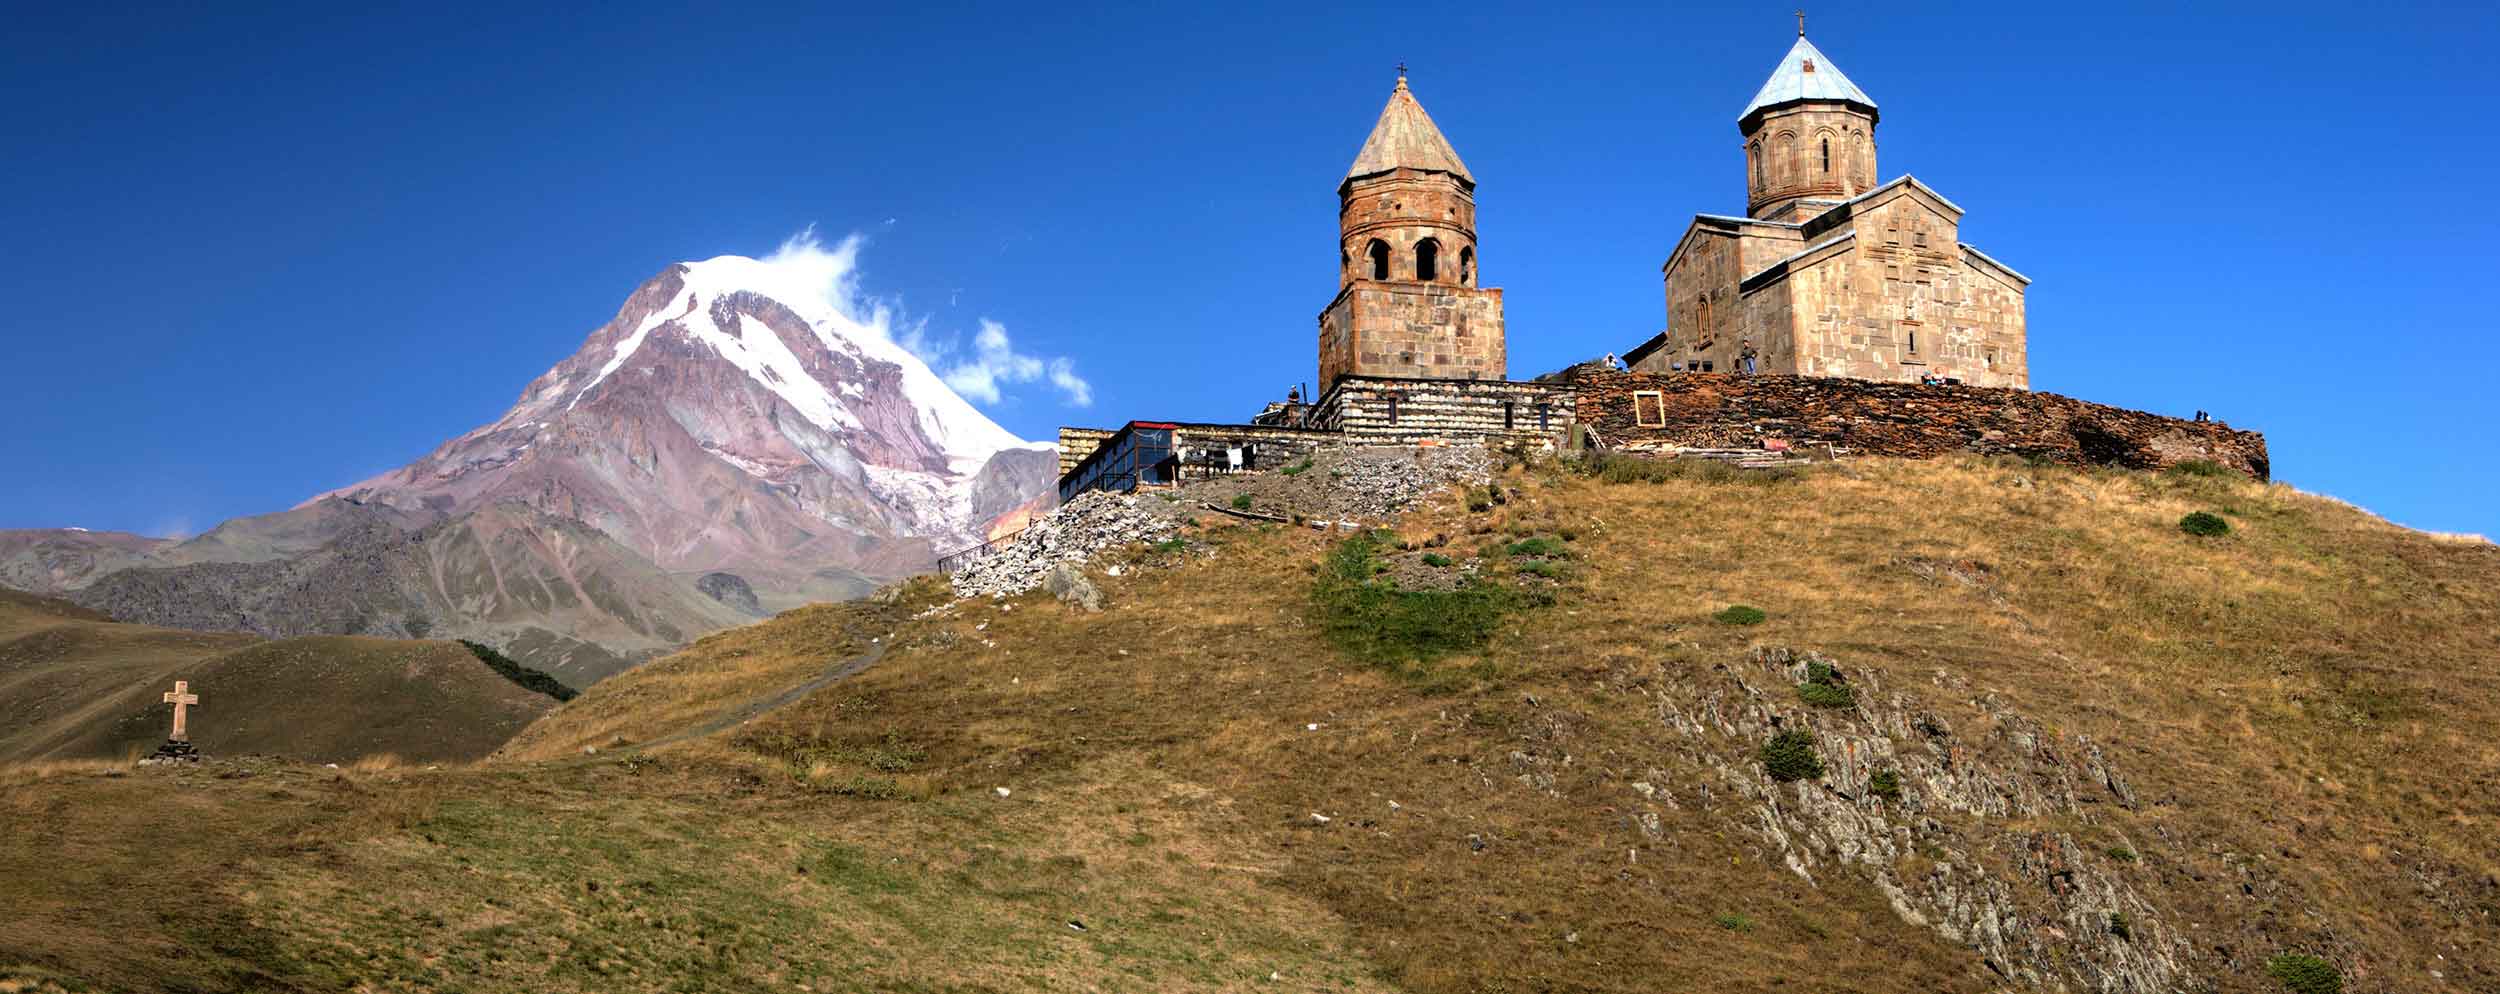 قله کازبک